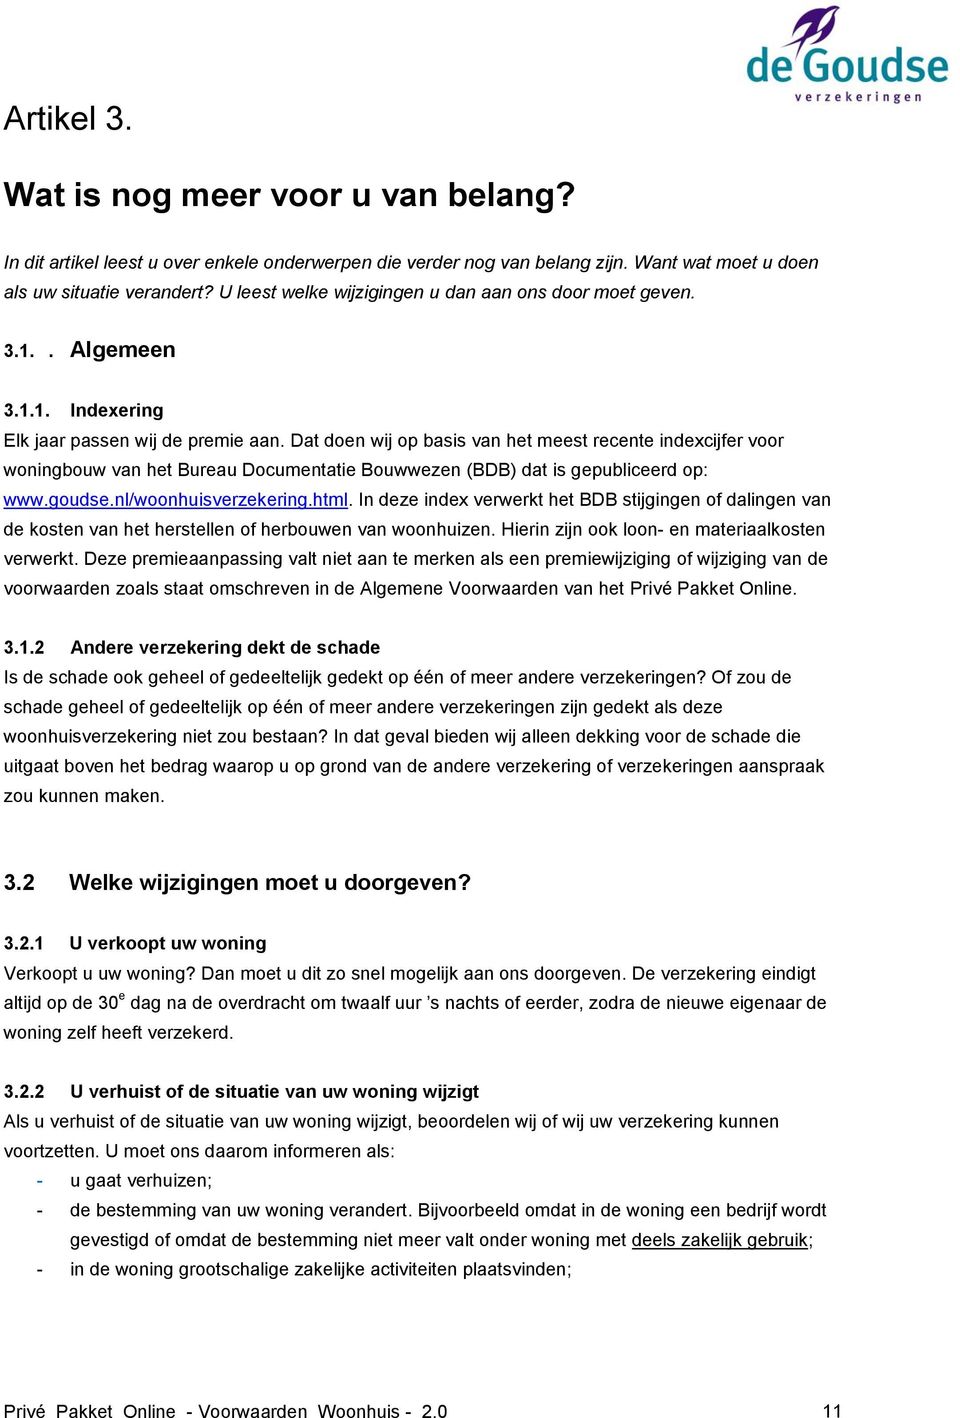 Dat doen wij op basis van het meest recente indexcijfer voor woningbouw van het Bureau Documentatie Bouwwezen (BDB) dat is gepubliceerd op: www.goudse.nl/woonhuisverzekering.html.